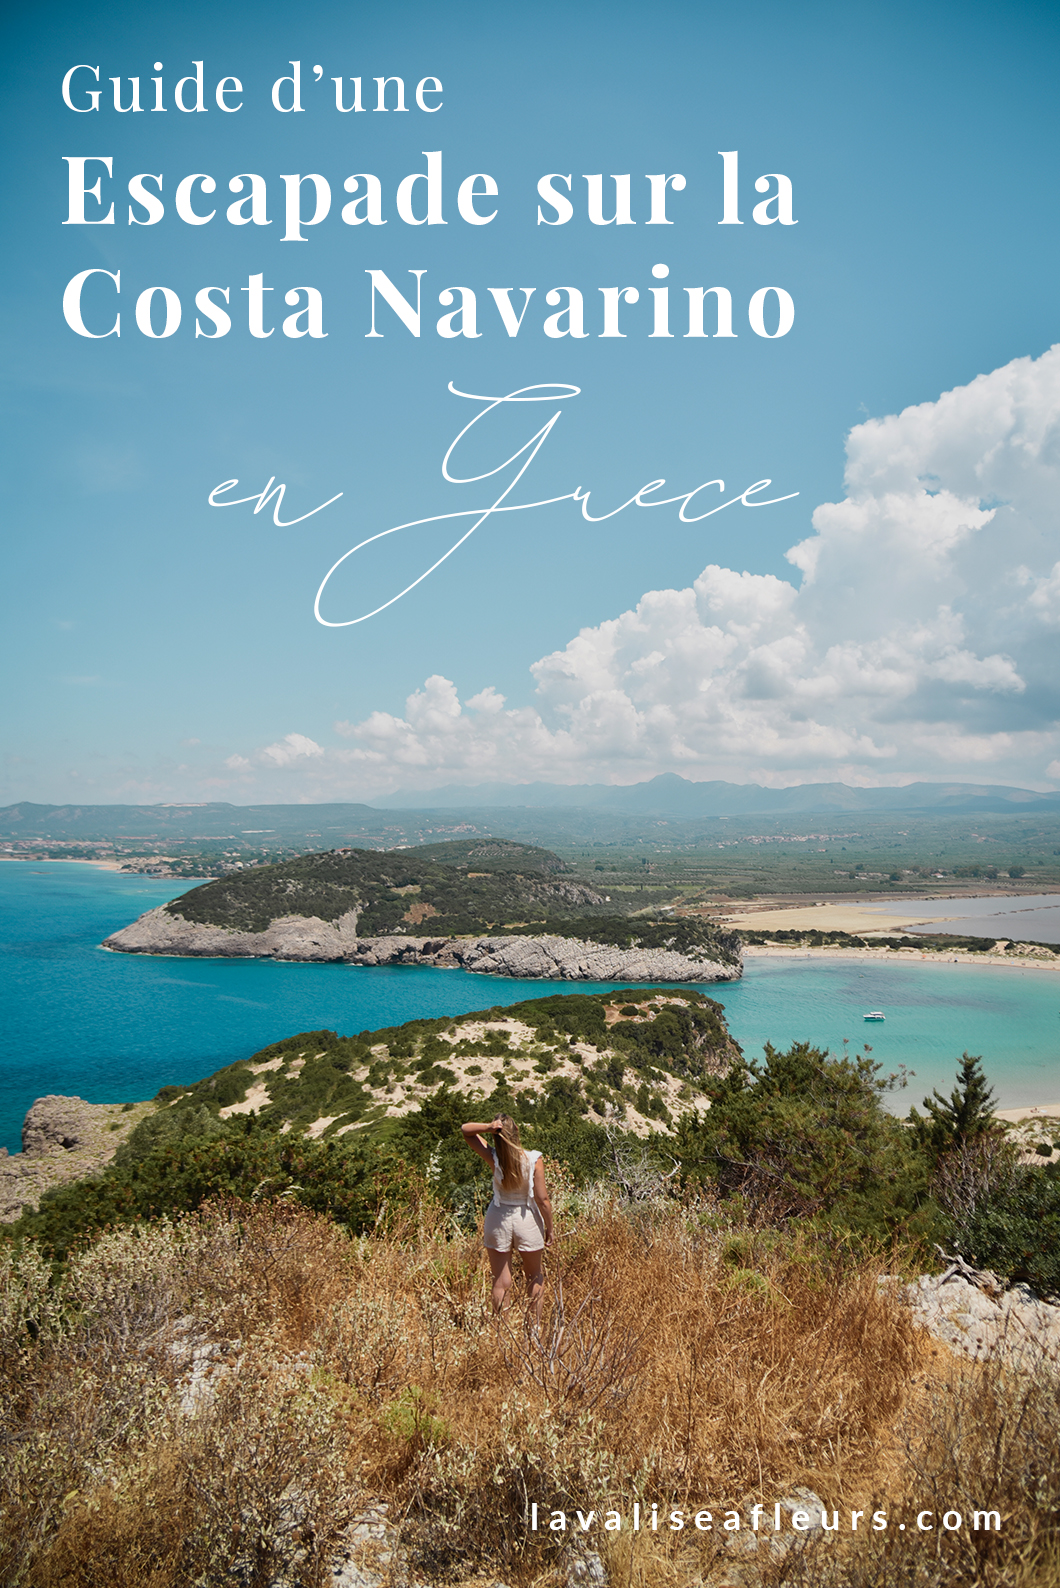 Guide d'une escapade sur la Costa Navarino en Grèce